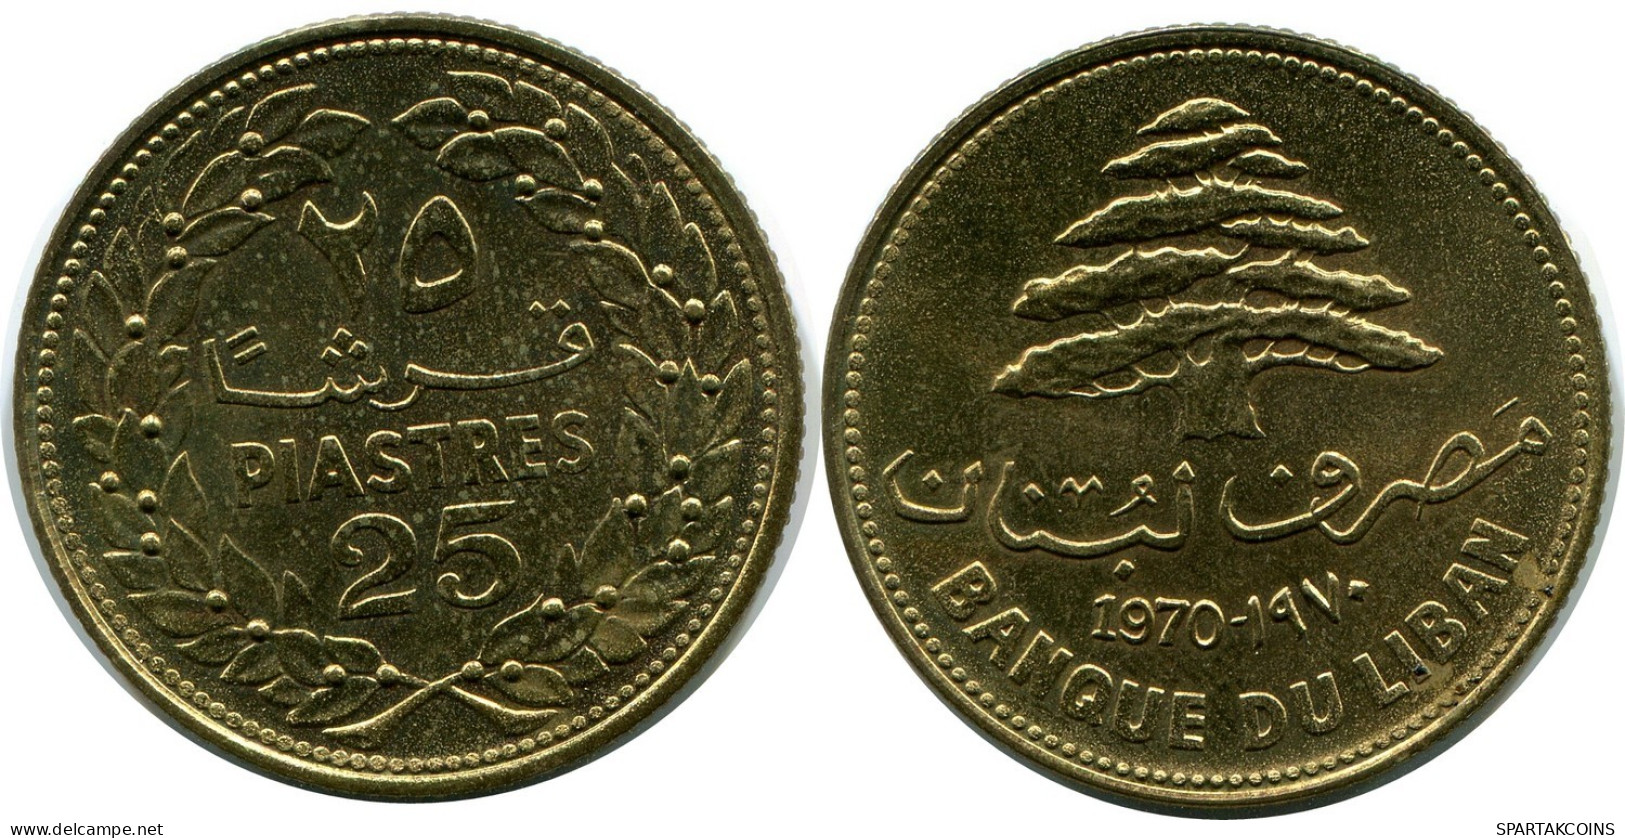 25 PIASTRES 1970 LEBANON Coin #AP385.U.A - Liban